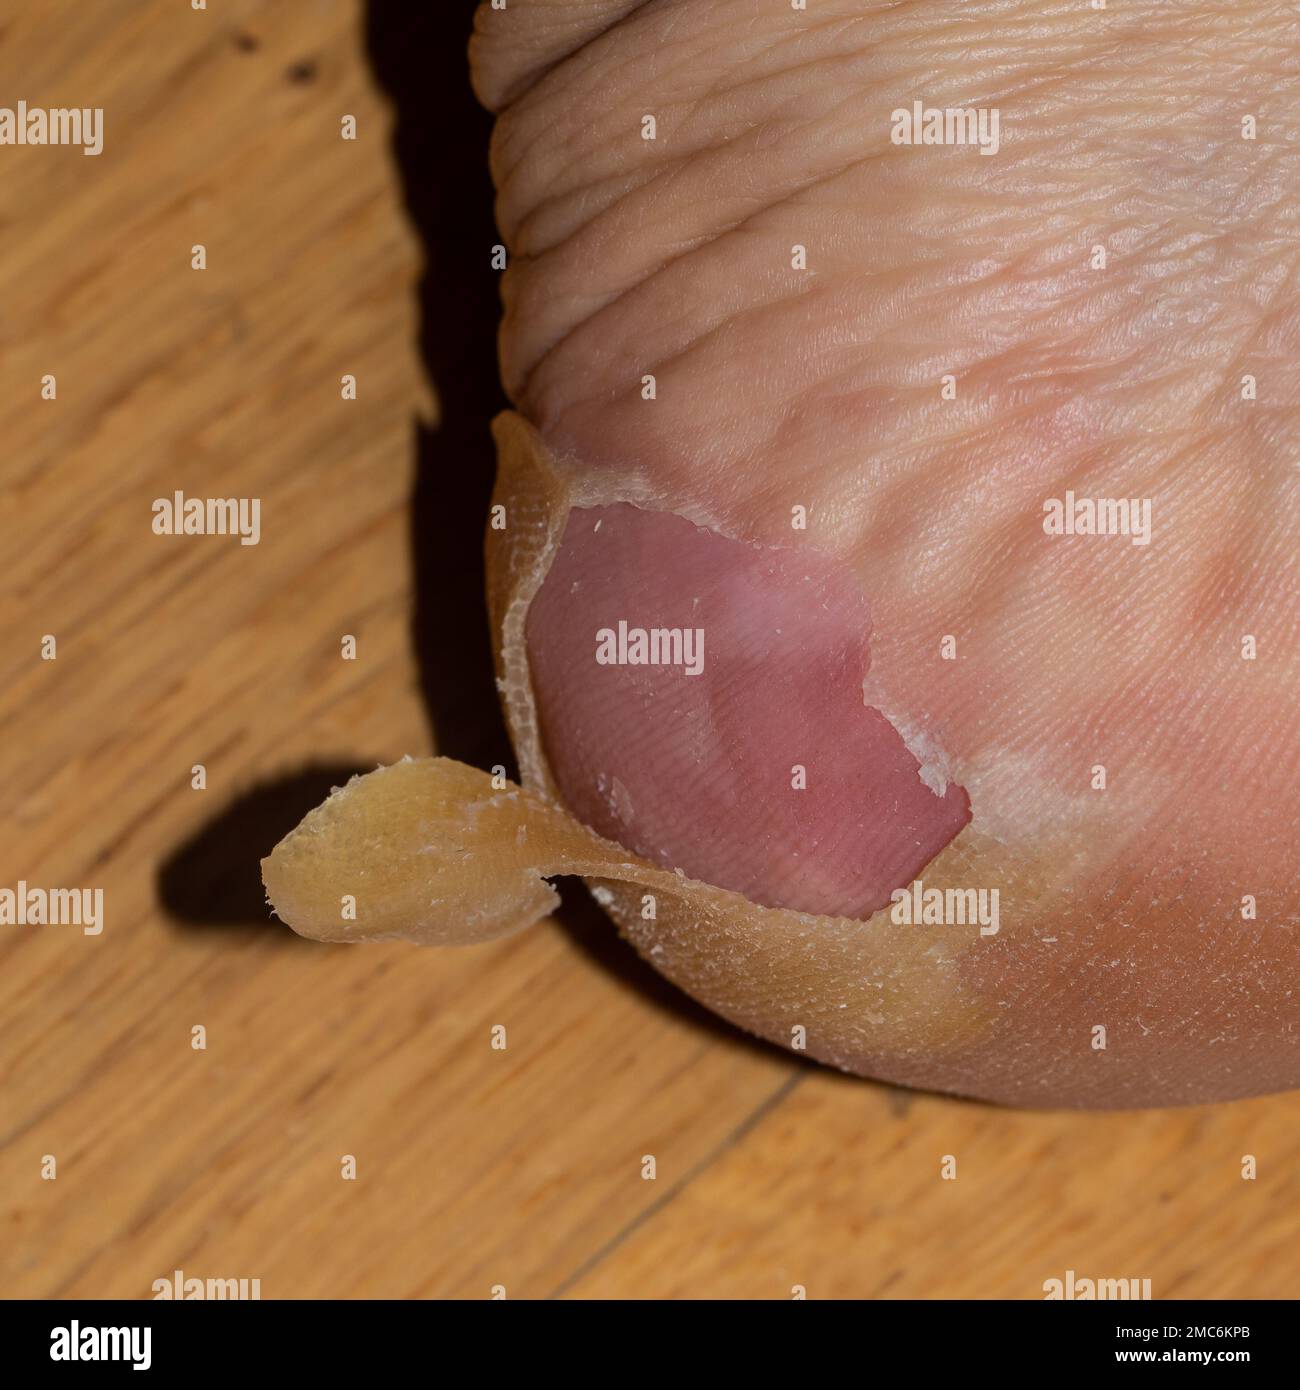 dettaglio dell'esfoliazione dopo la scarlattina in una persona caucasica adulta Foto Stock